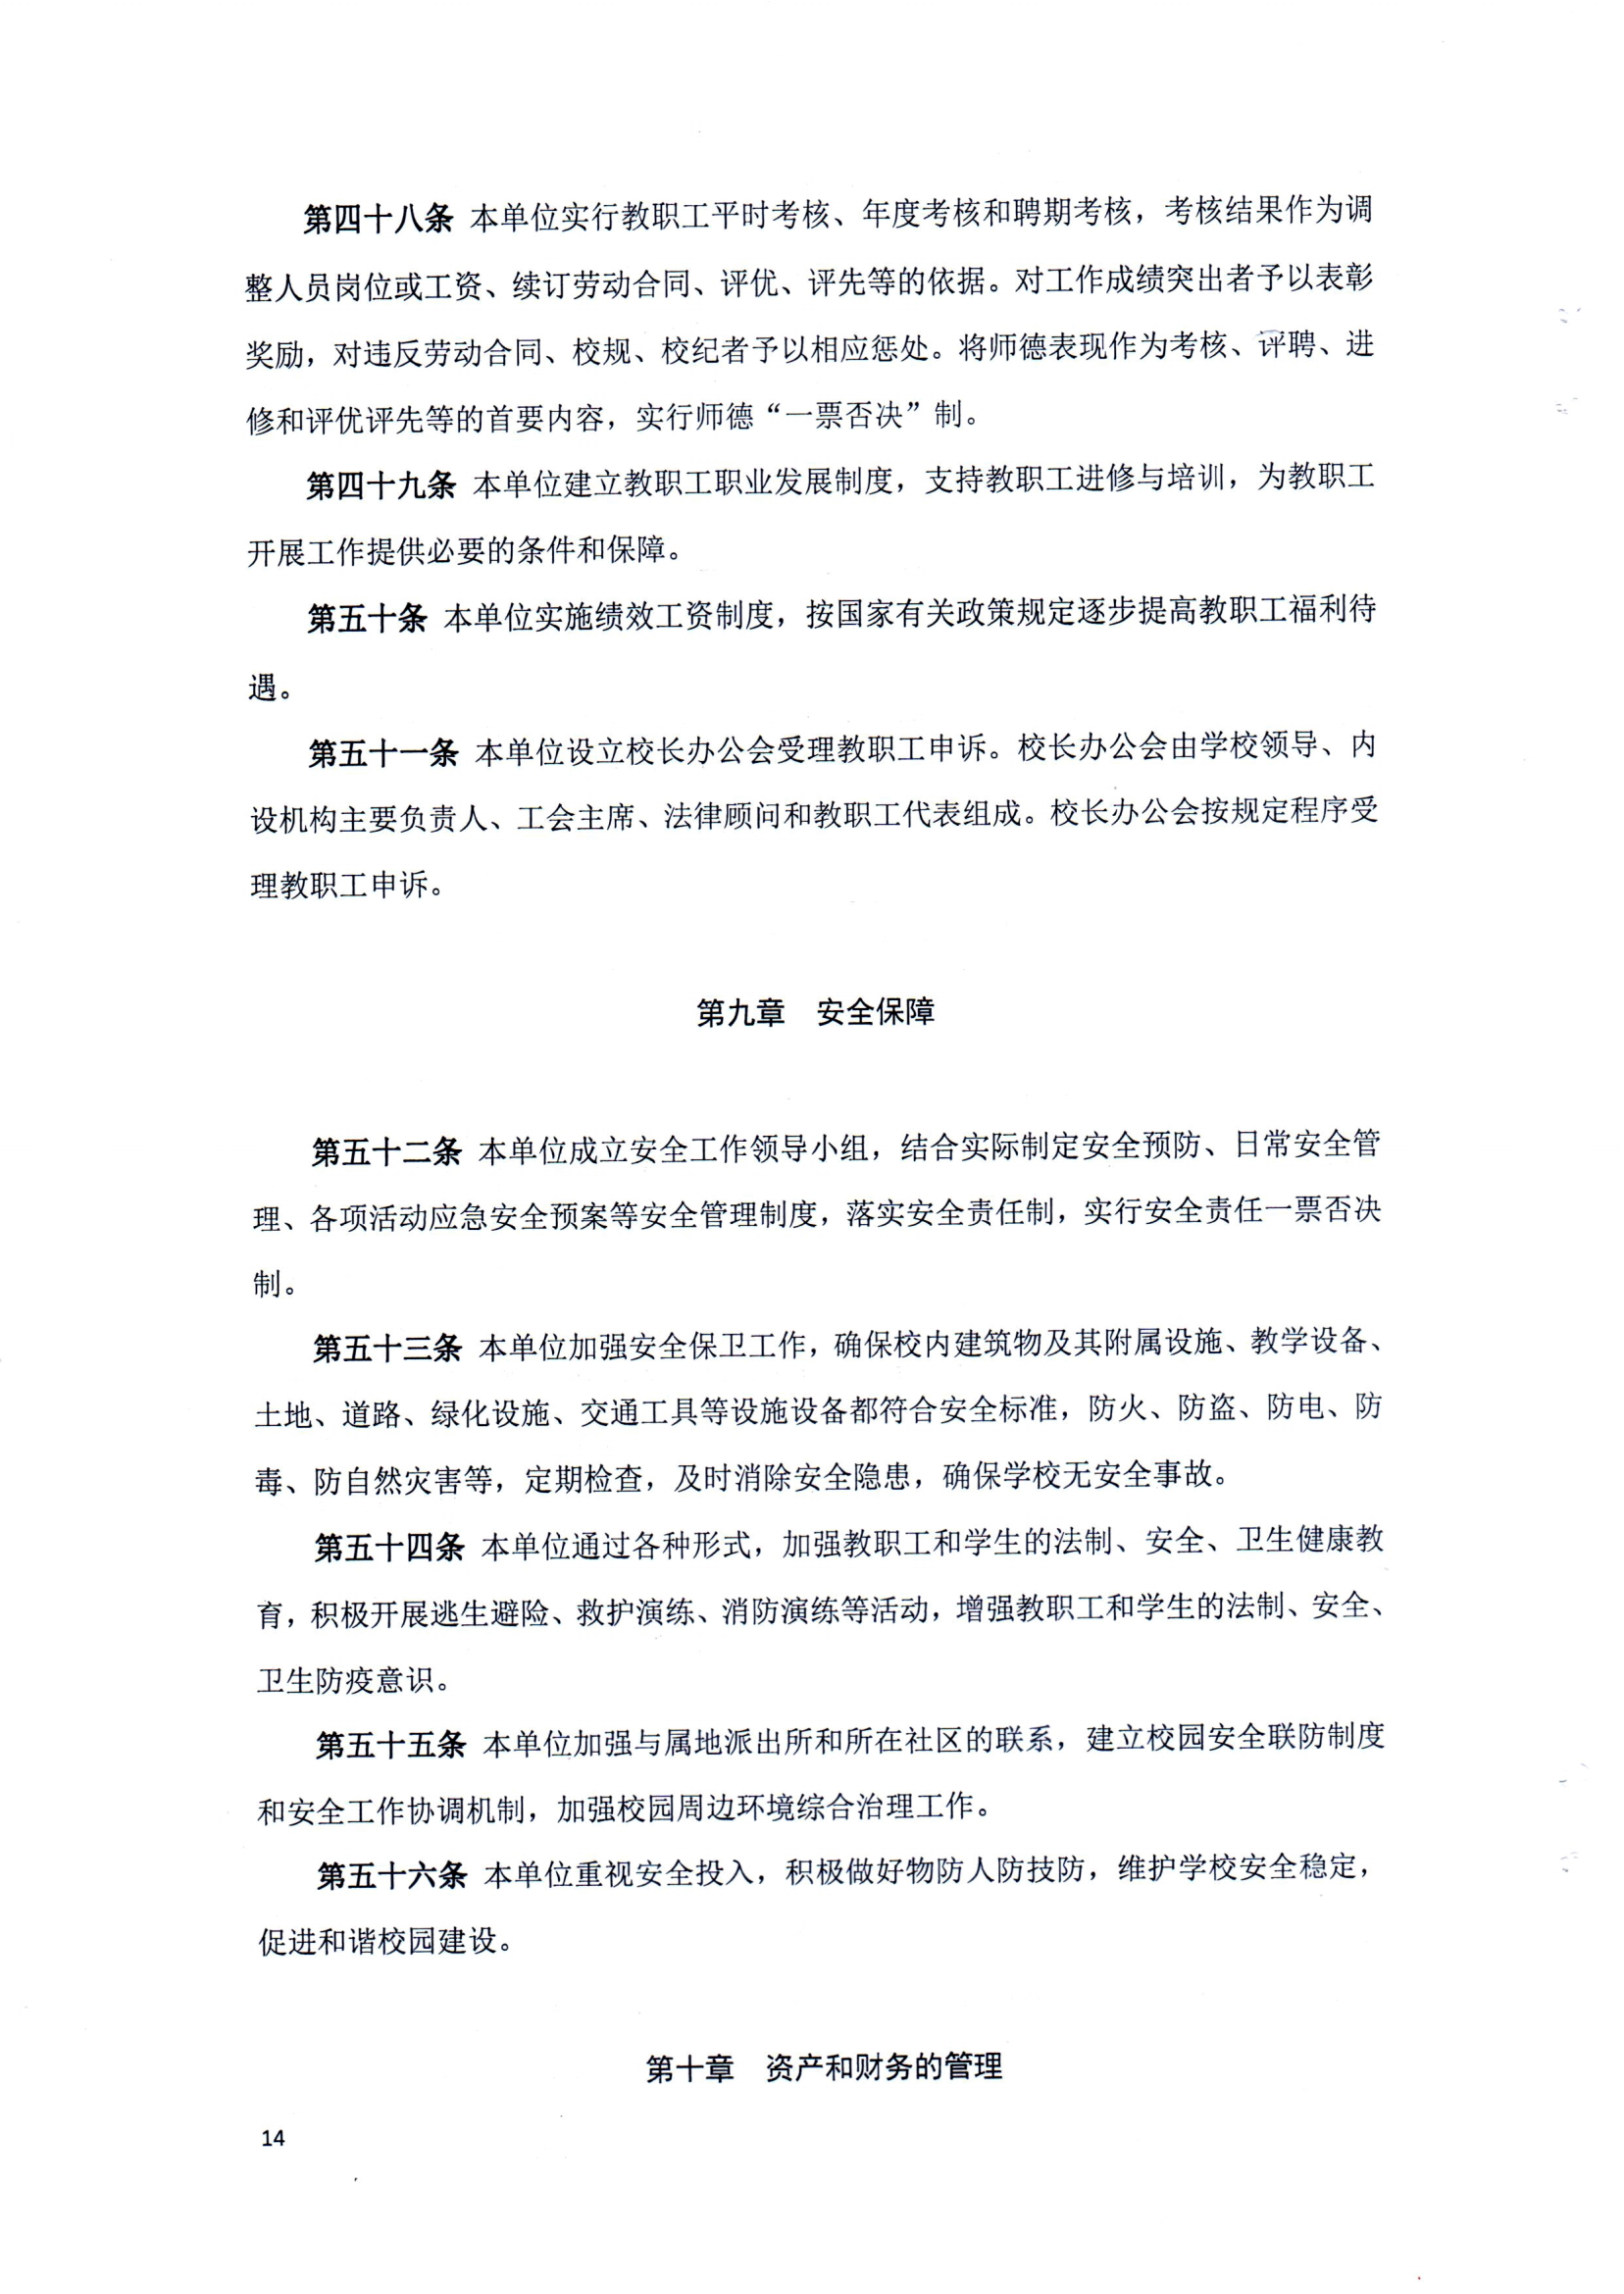 （中国）有限公司官网章程（修正案）_13.png